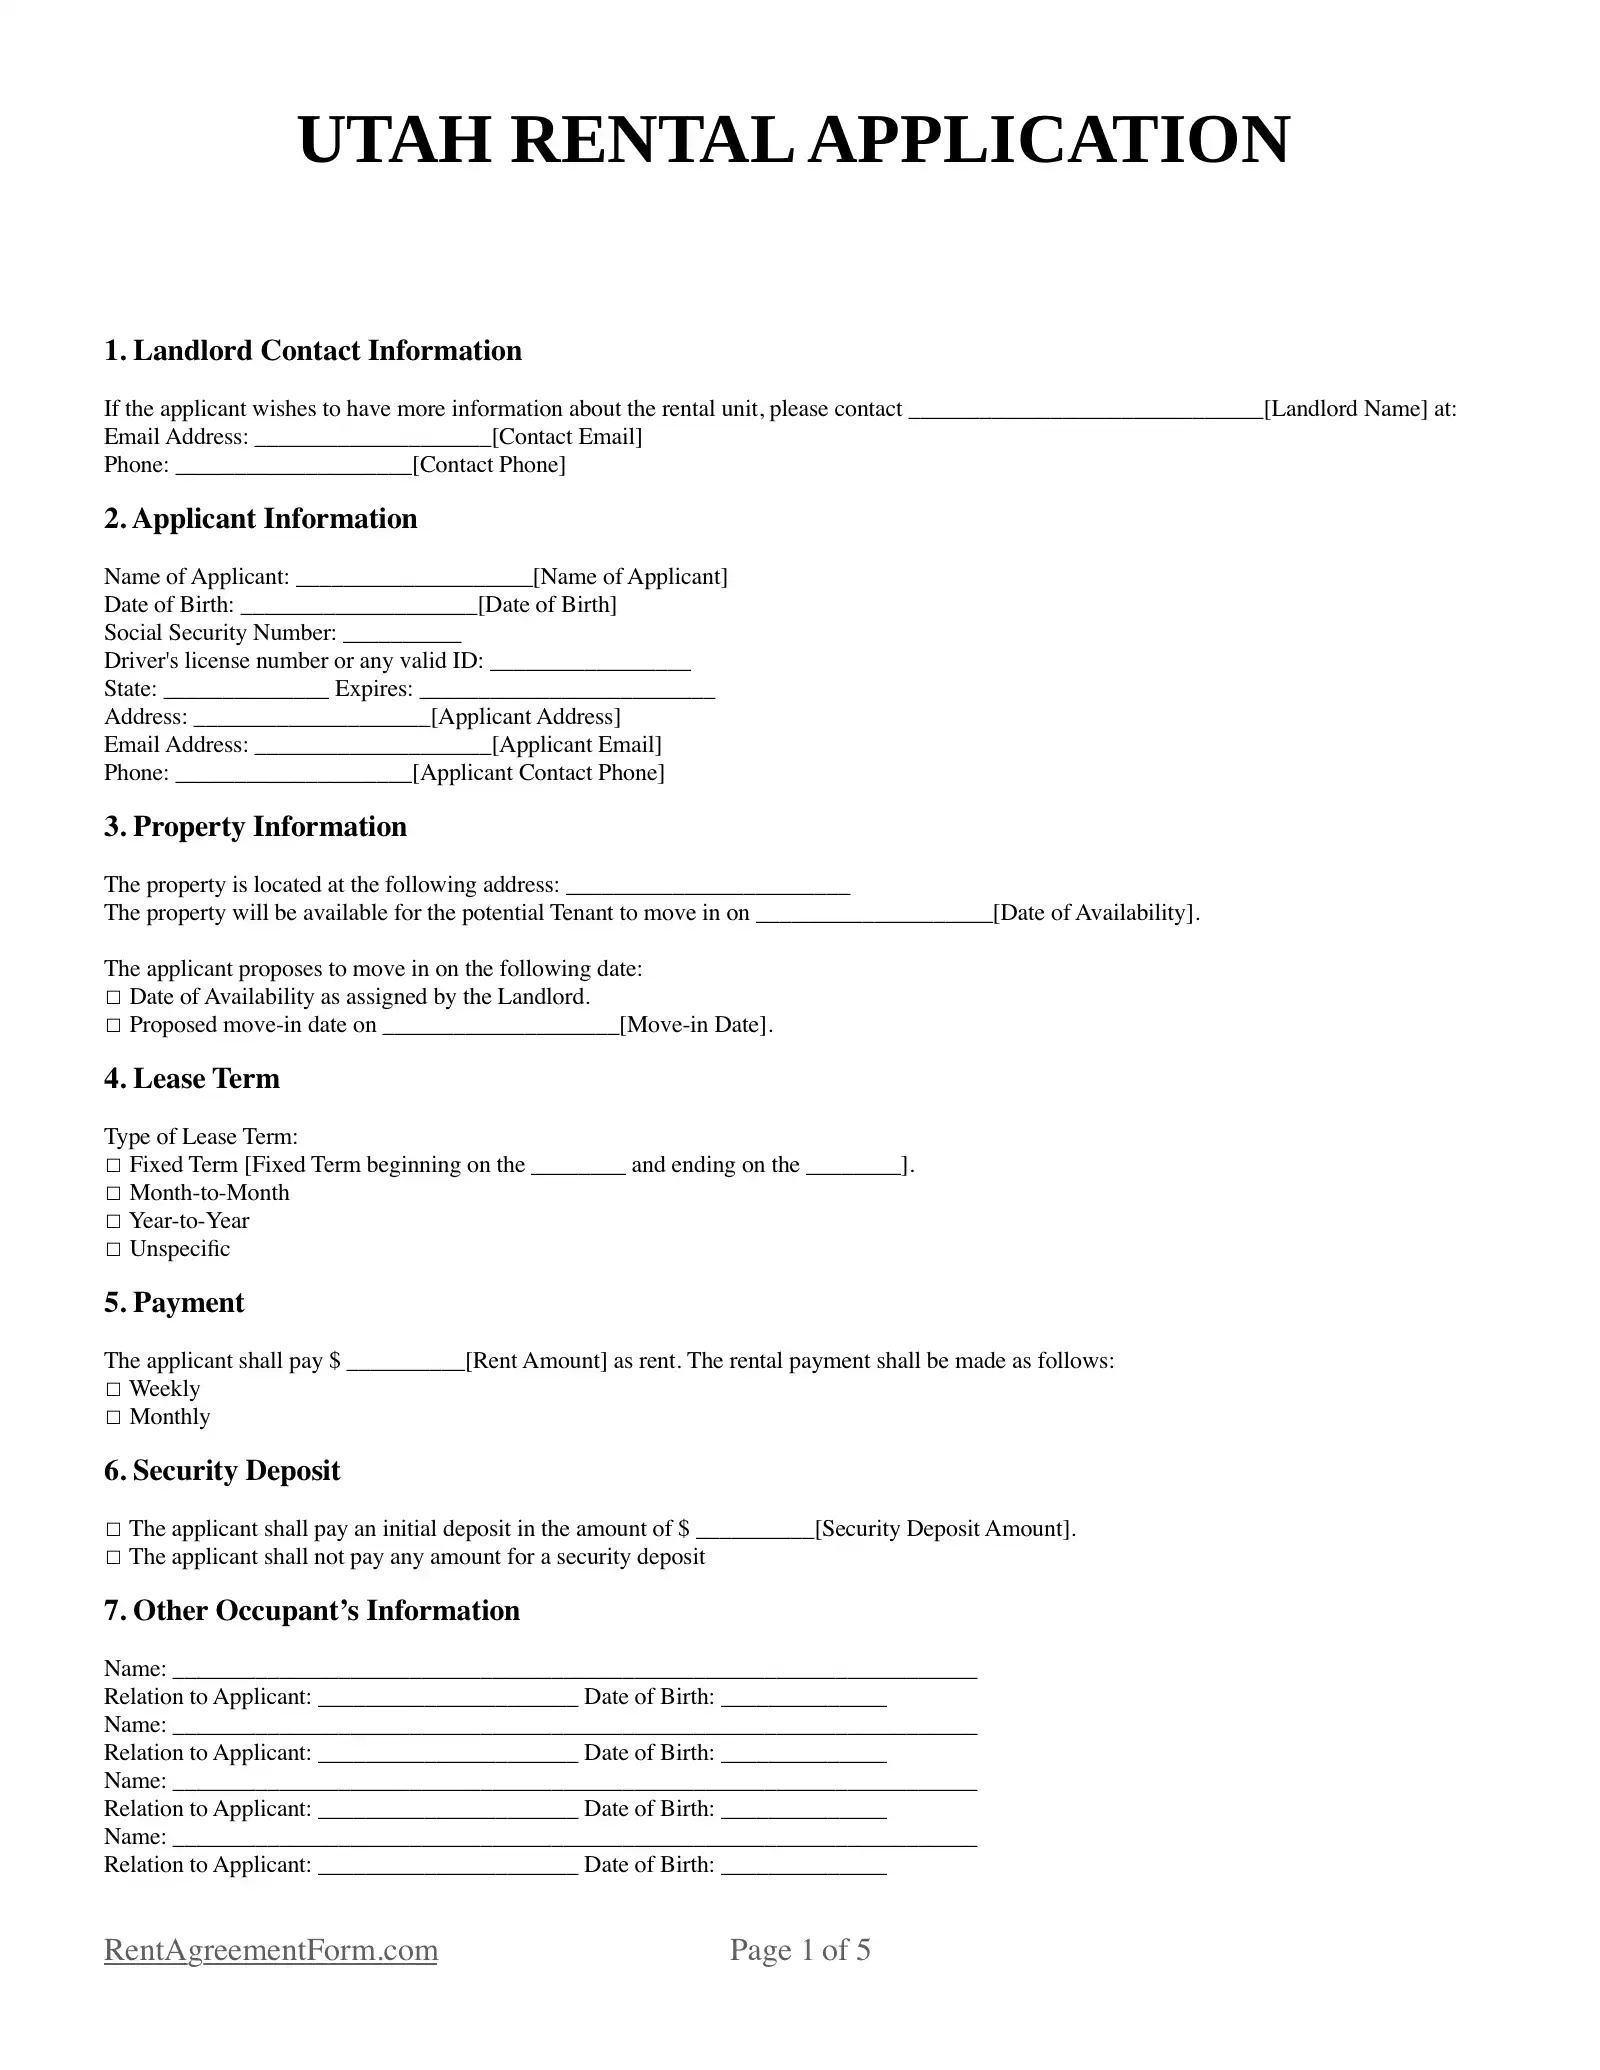 Utah Rental Application Sample